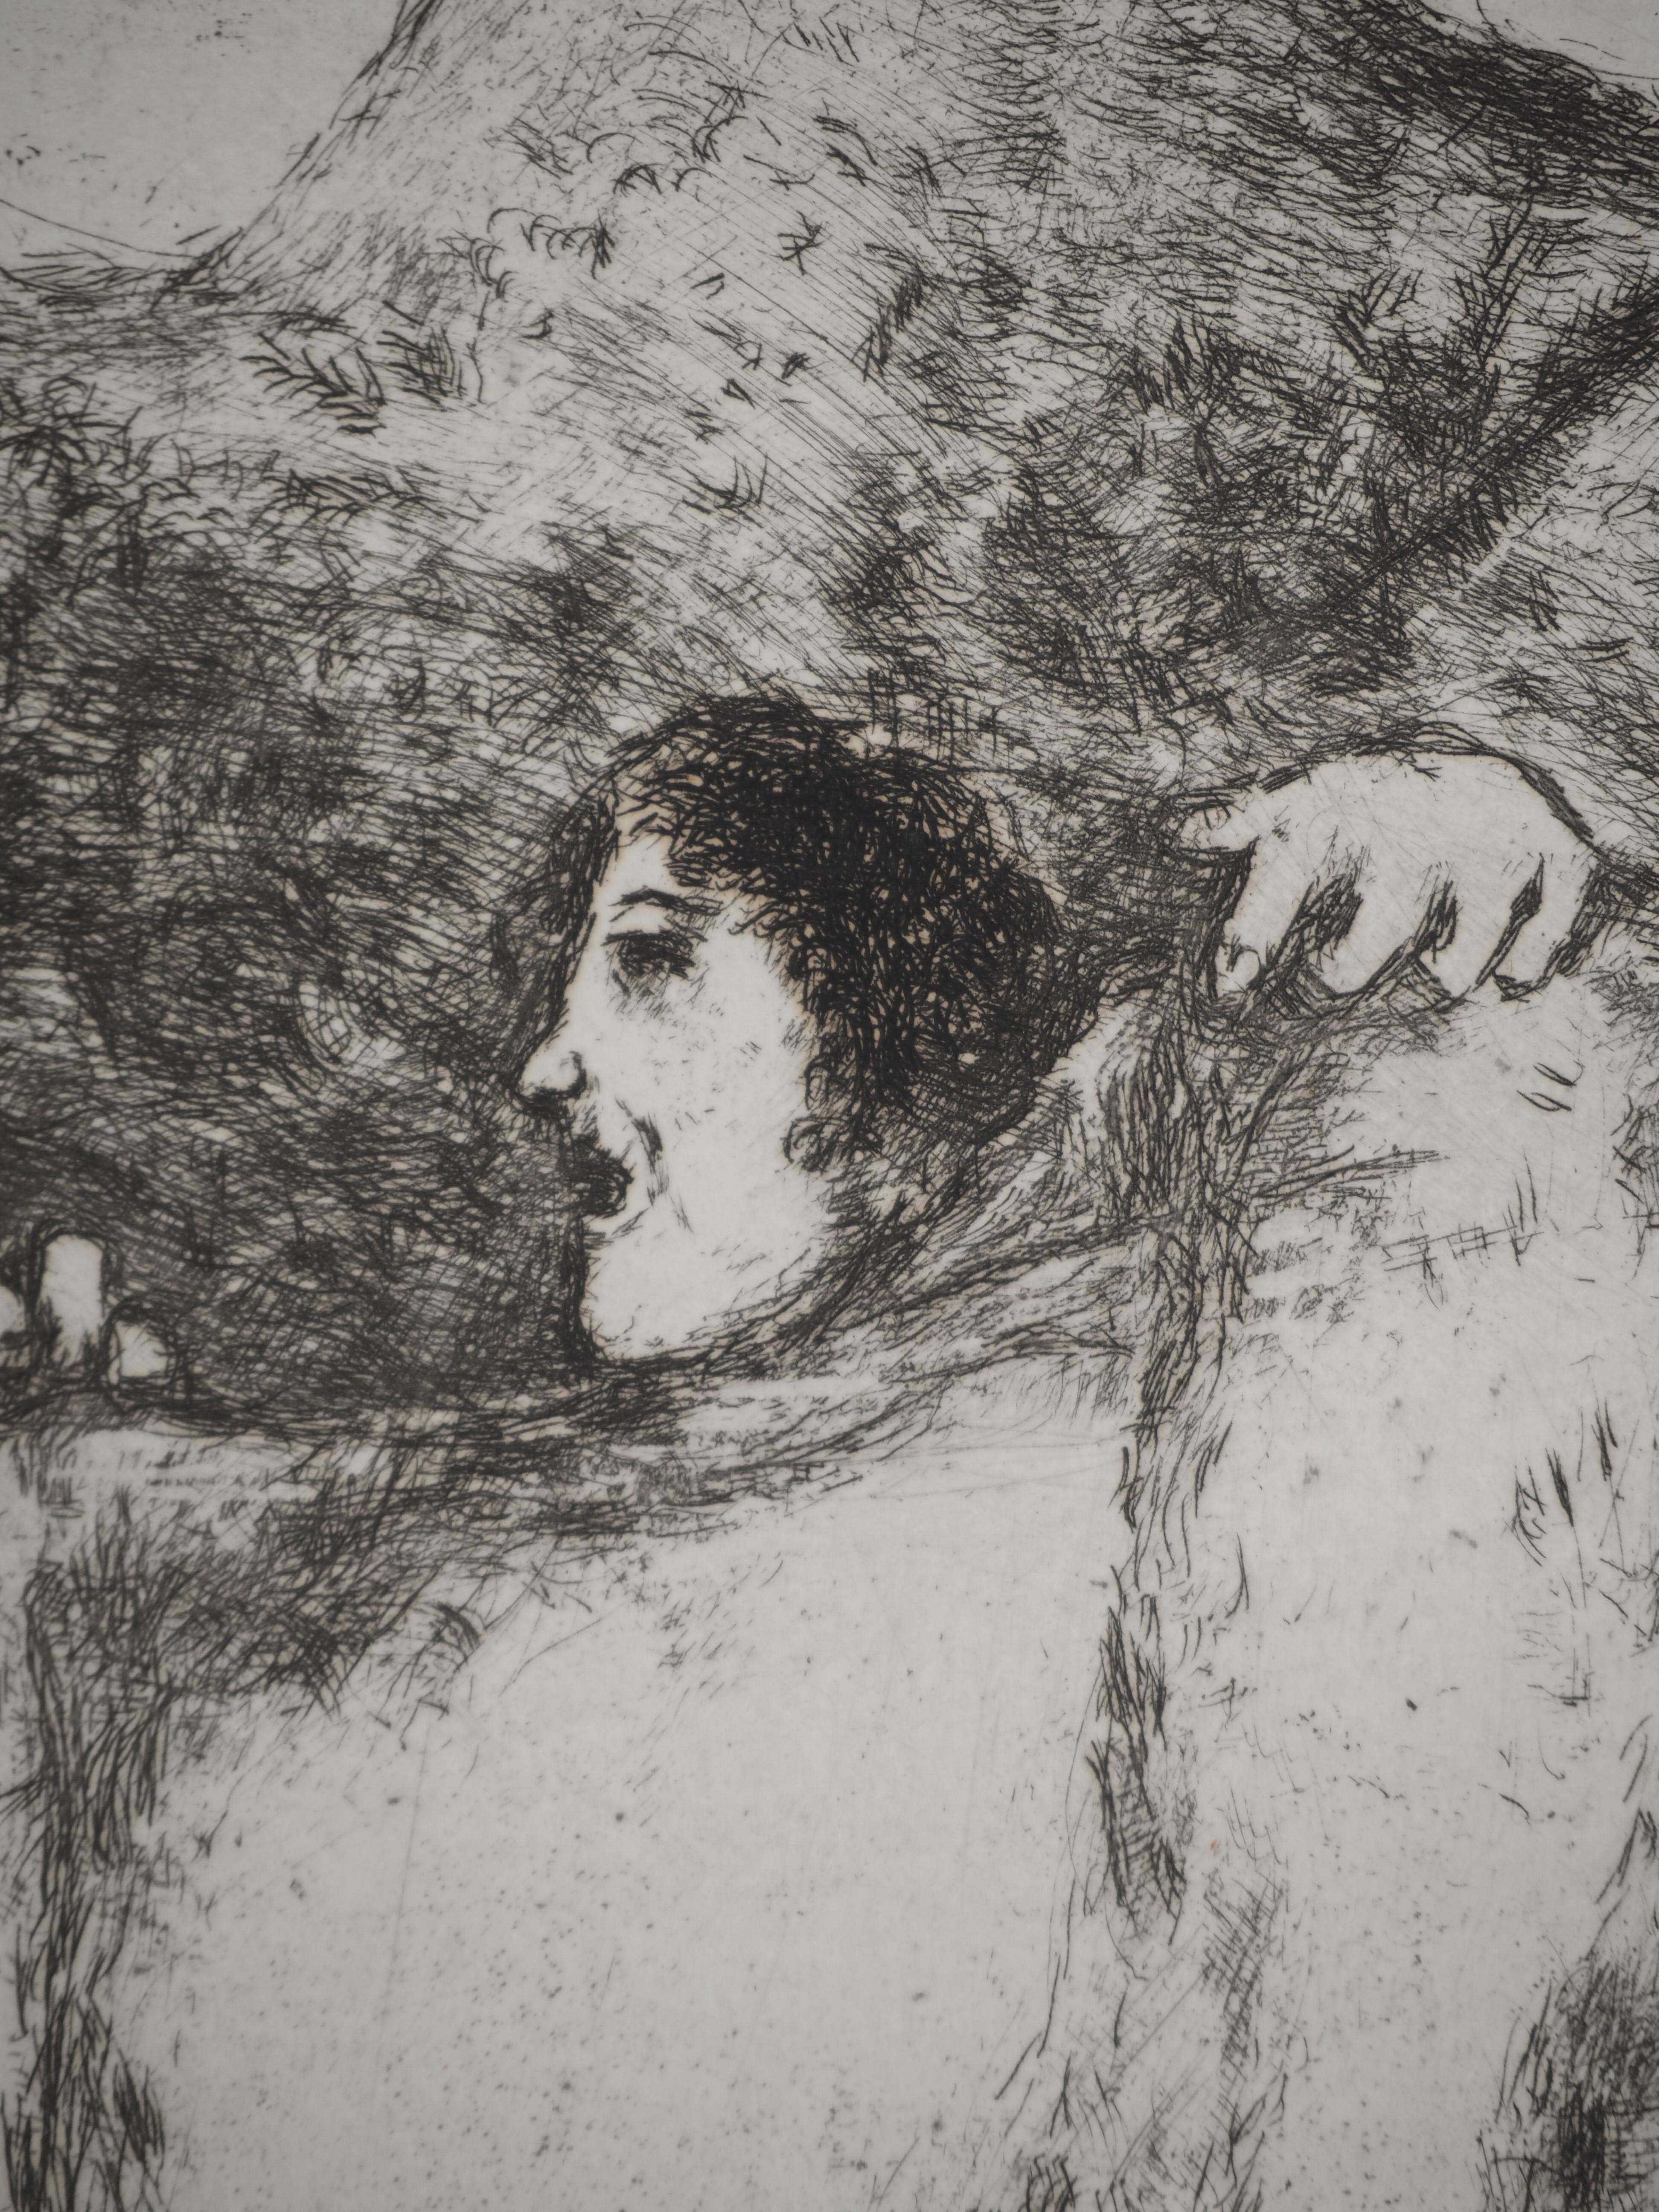 Marc Chagall (1887-1958)
Bible : Noah's coat  (Le manteau de Noé), 1939

Original etching
Not signed
On Montval vellum, 44 x 33.5 cm (c. 17.3 x 13.1 inch)

INFORMATION: Published by Vollard / Tériade in 1956

REFERENCE: Catalogue raisonné Sorlier